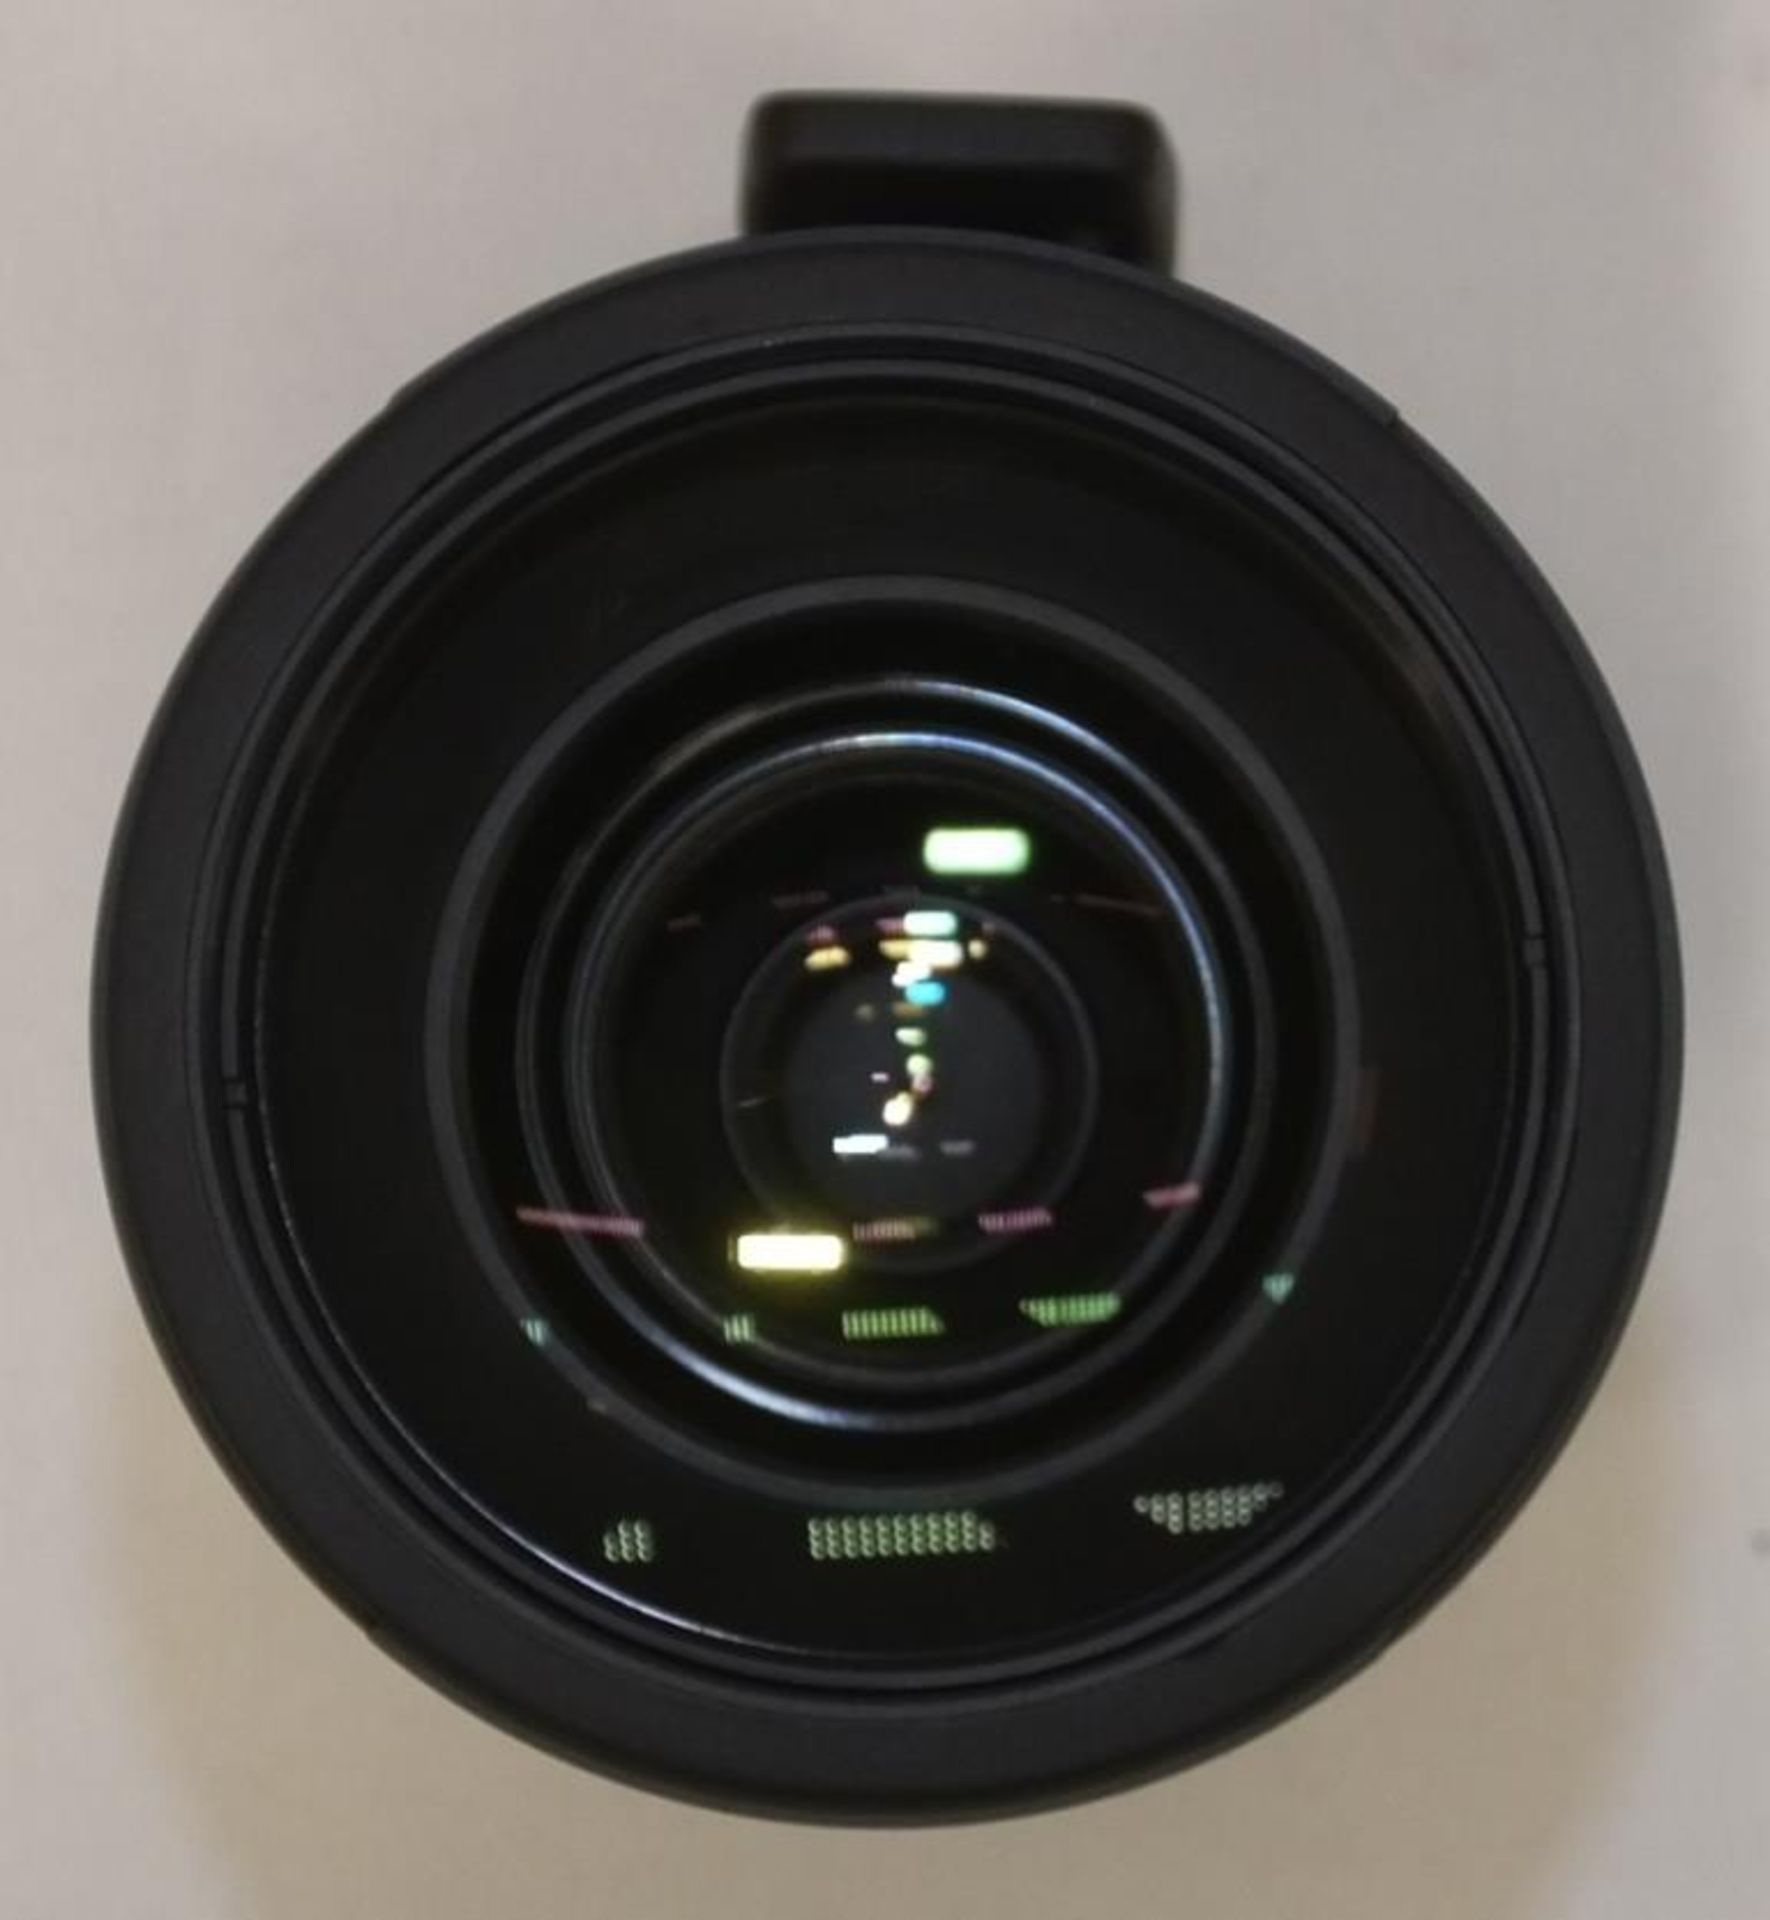 Nikon AF-S Nikkor 80-400mm F/4.5-5.6G ED VR Lens - Serial No. 268958 with Nikon CL-M2 Case - Image 4 of 7